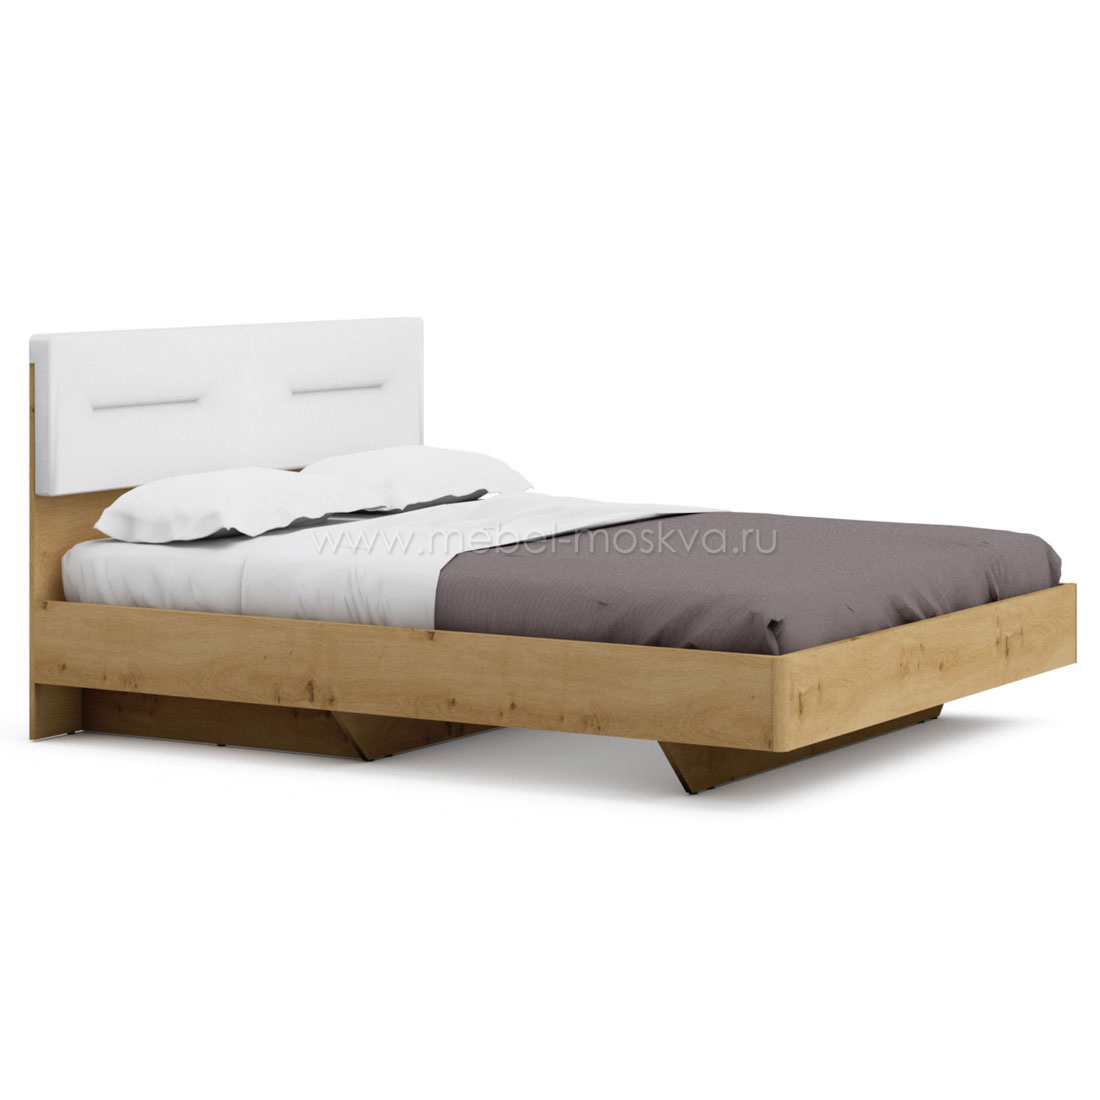 Двуспальная кровать 160x200 Napoli (Дуб натуральный)